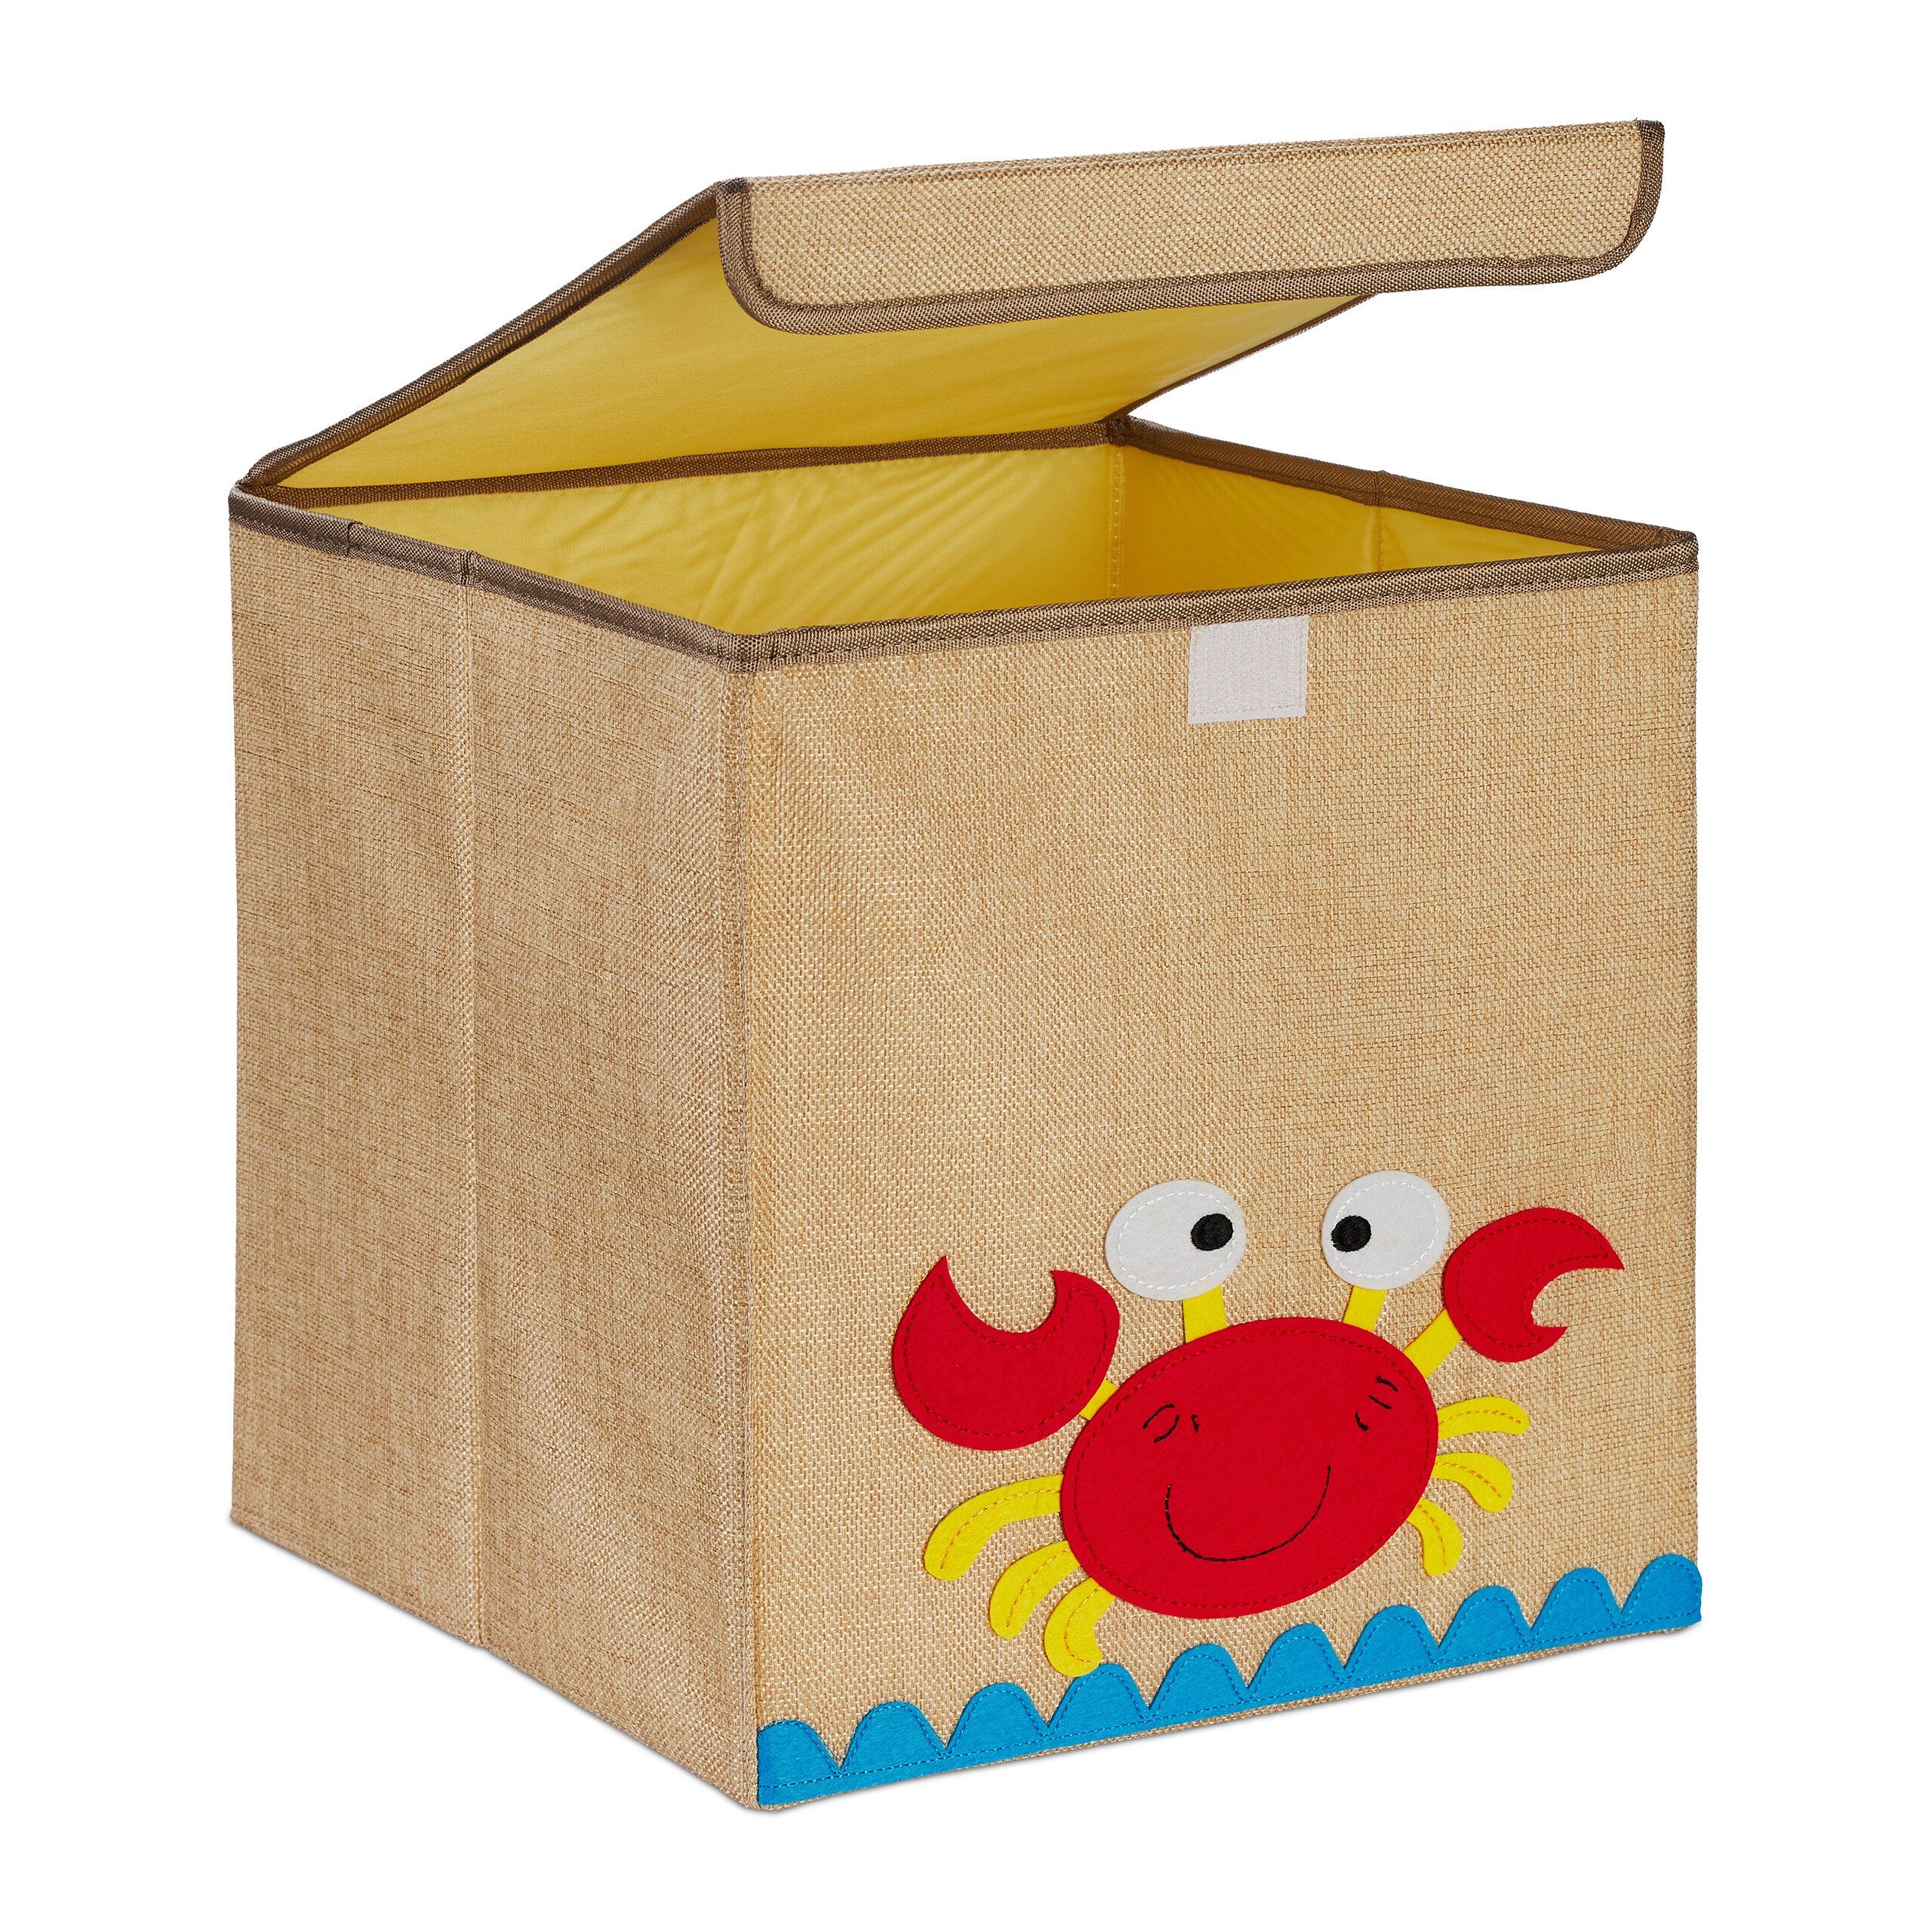 relaxdays Aufbewahrungsbox Aufbewahrungsbox für Kinder, Krebs Beige Orange Gelb